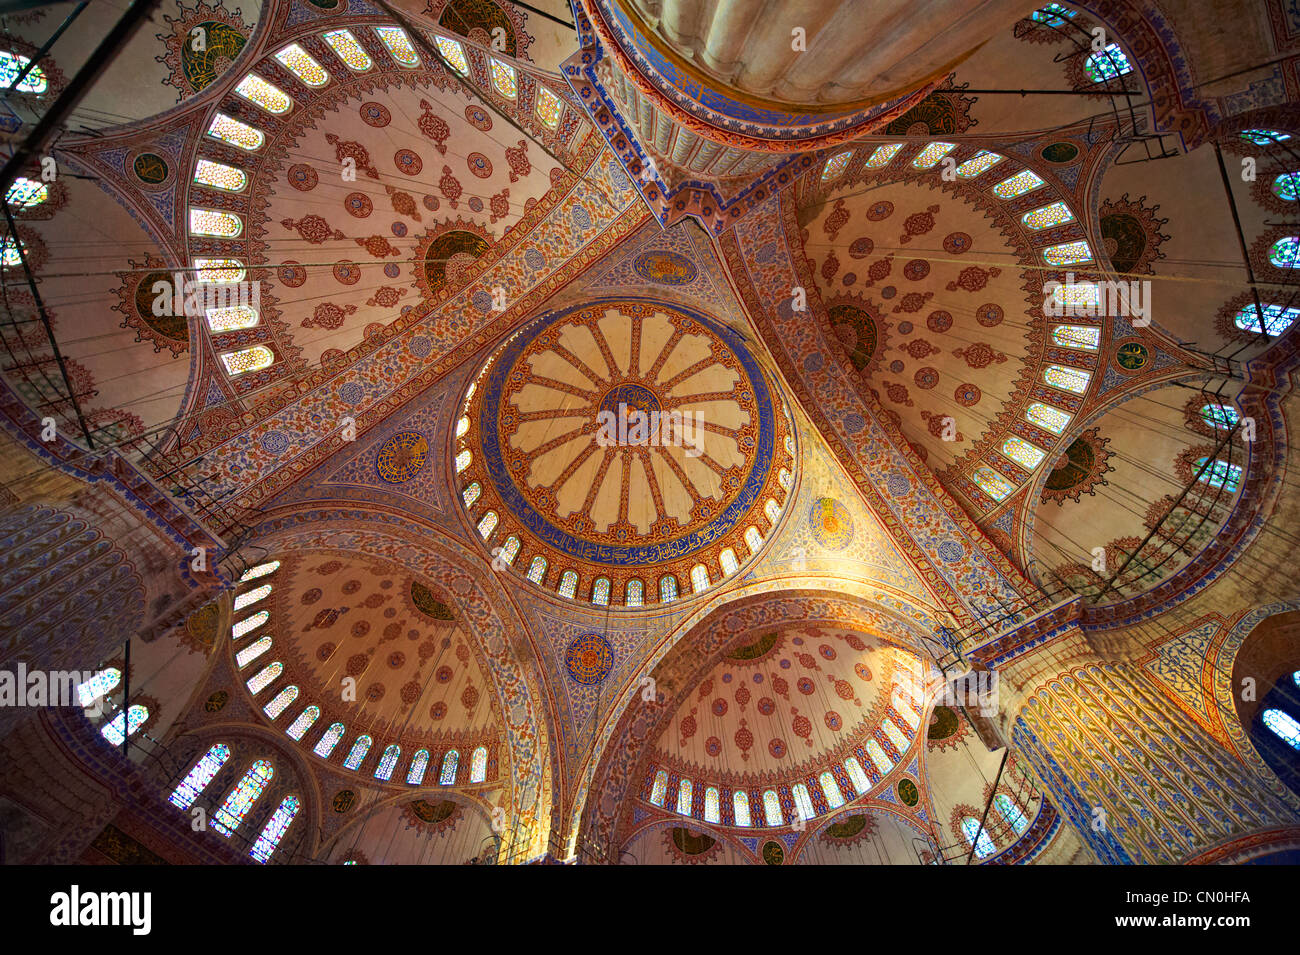 Dôme intérieur & décoration islamique de la Mosquée Bleue Sultan Ahmed ( Istanbul Sultanahmet Camii ) Banque D'Images